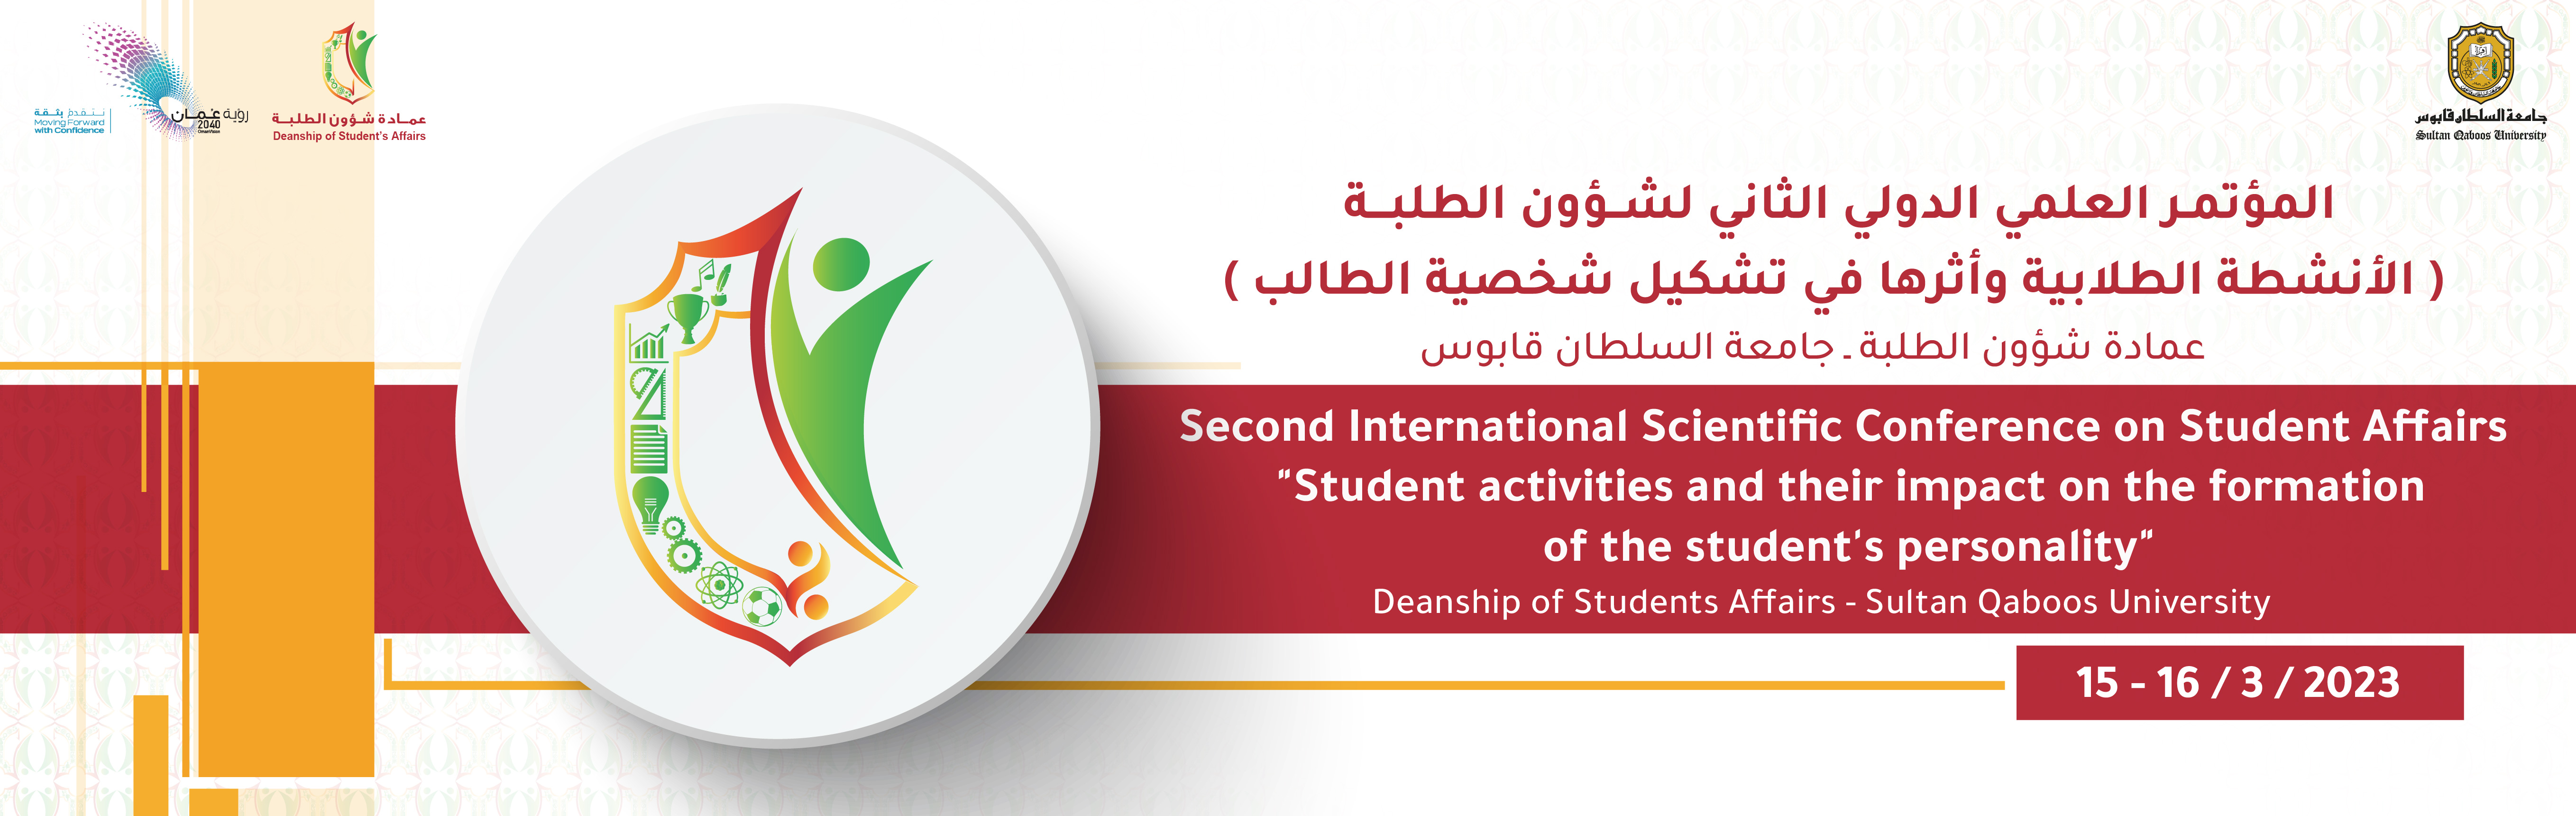 بنر المؤتمر العلمي الدولي الثاني لشؤون الطلبة (الأنشطة الطلابية وأثرها في تشكيل شخصية الطالب)